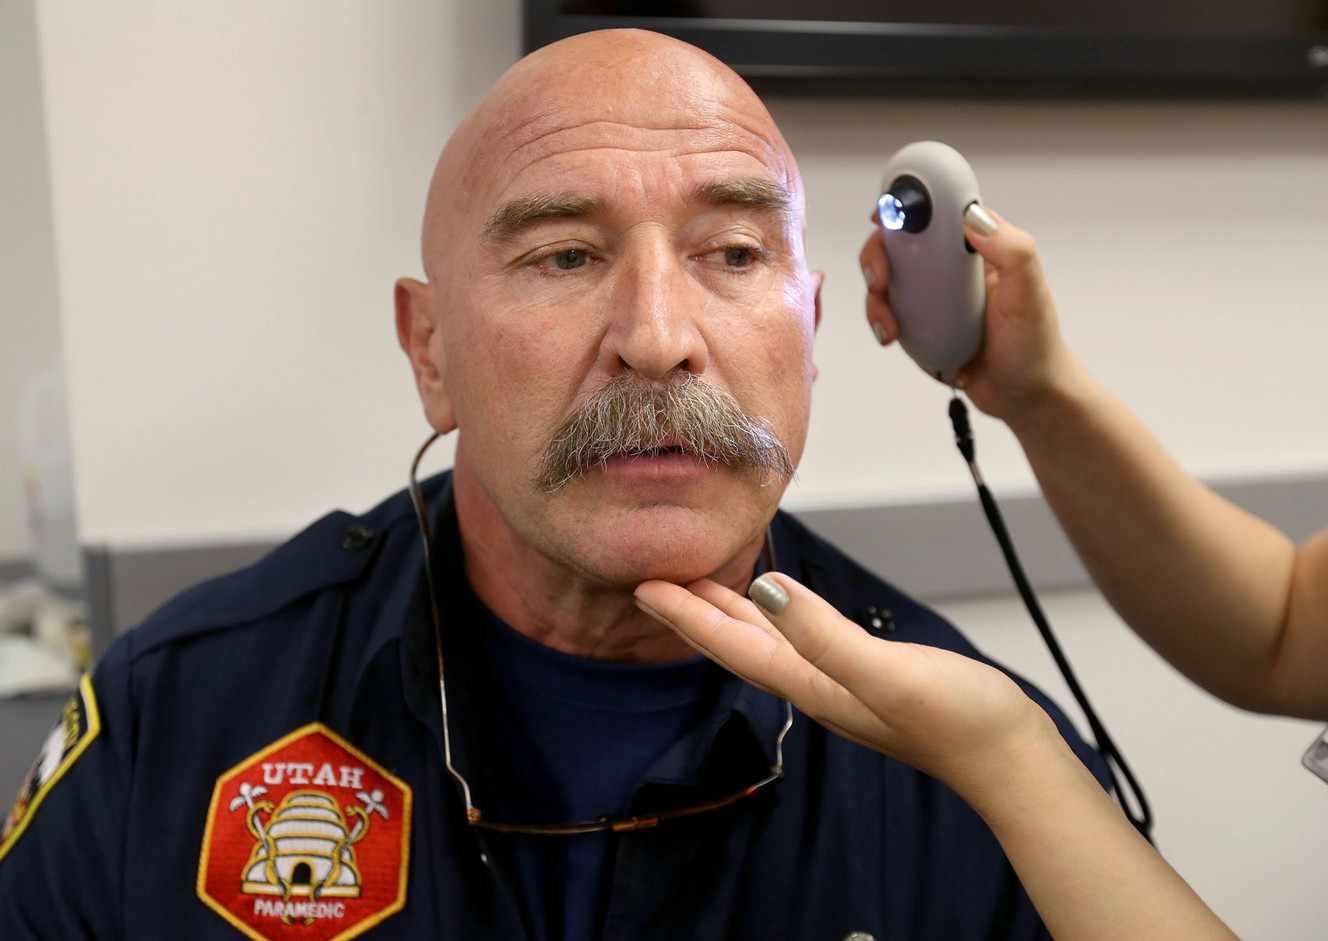 Scratch reccomend Firefighter facial hair